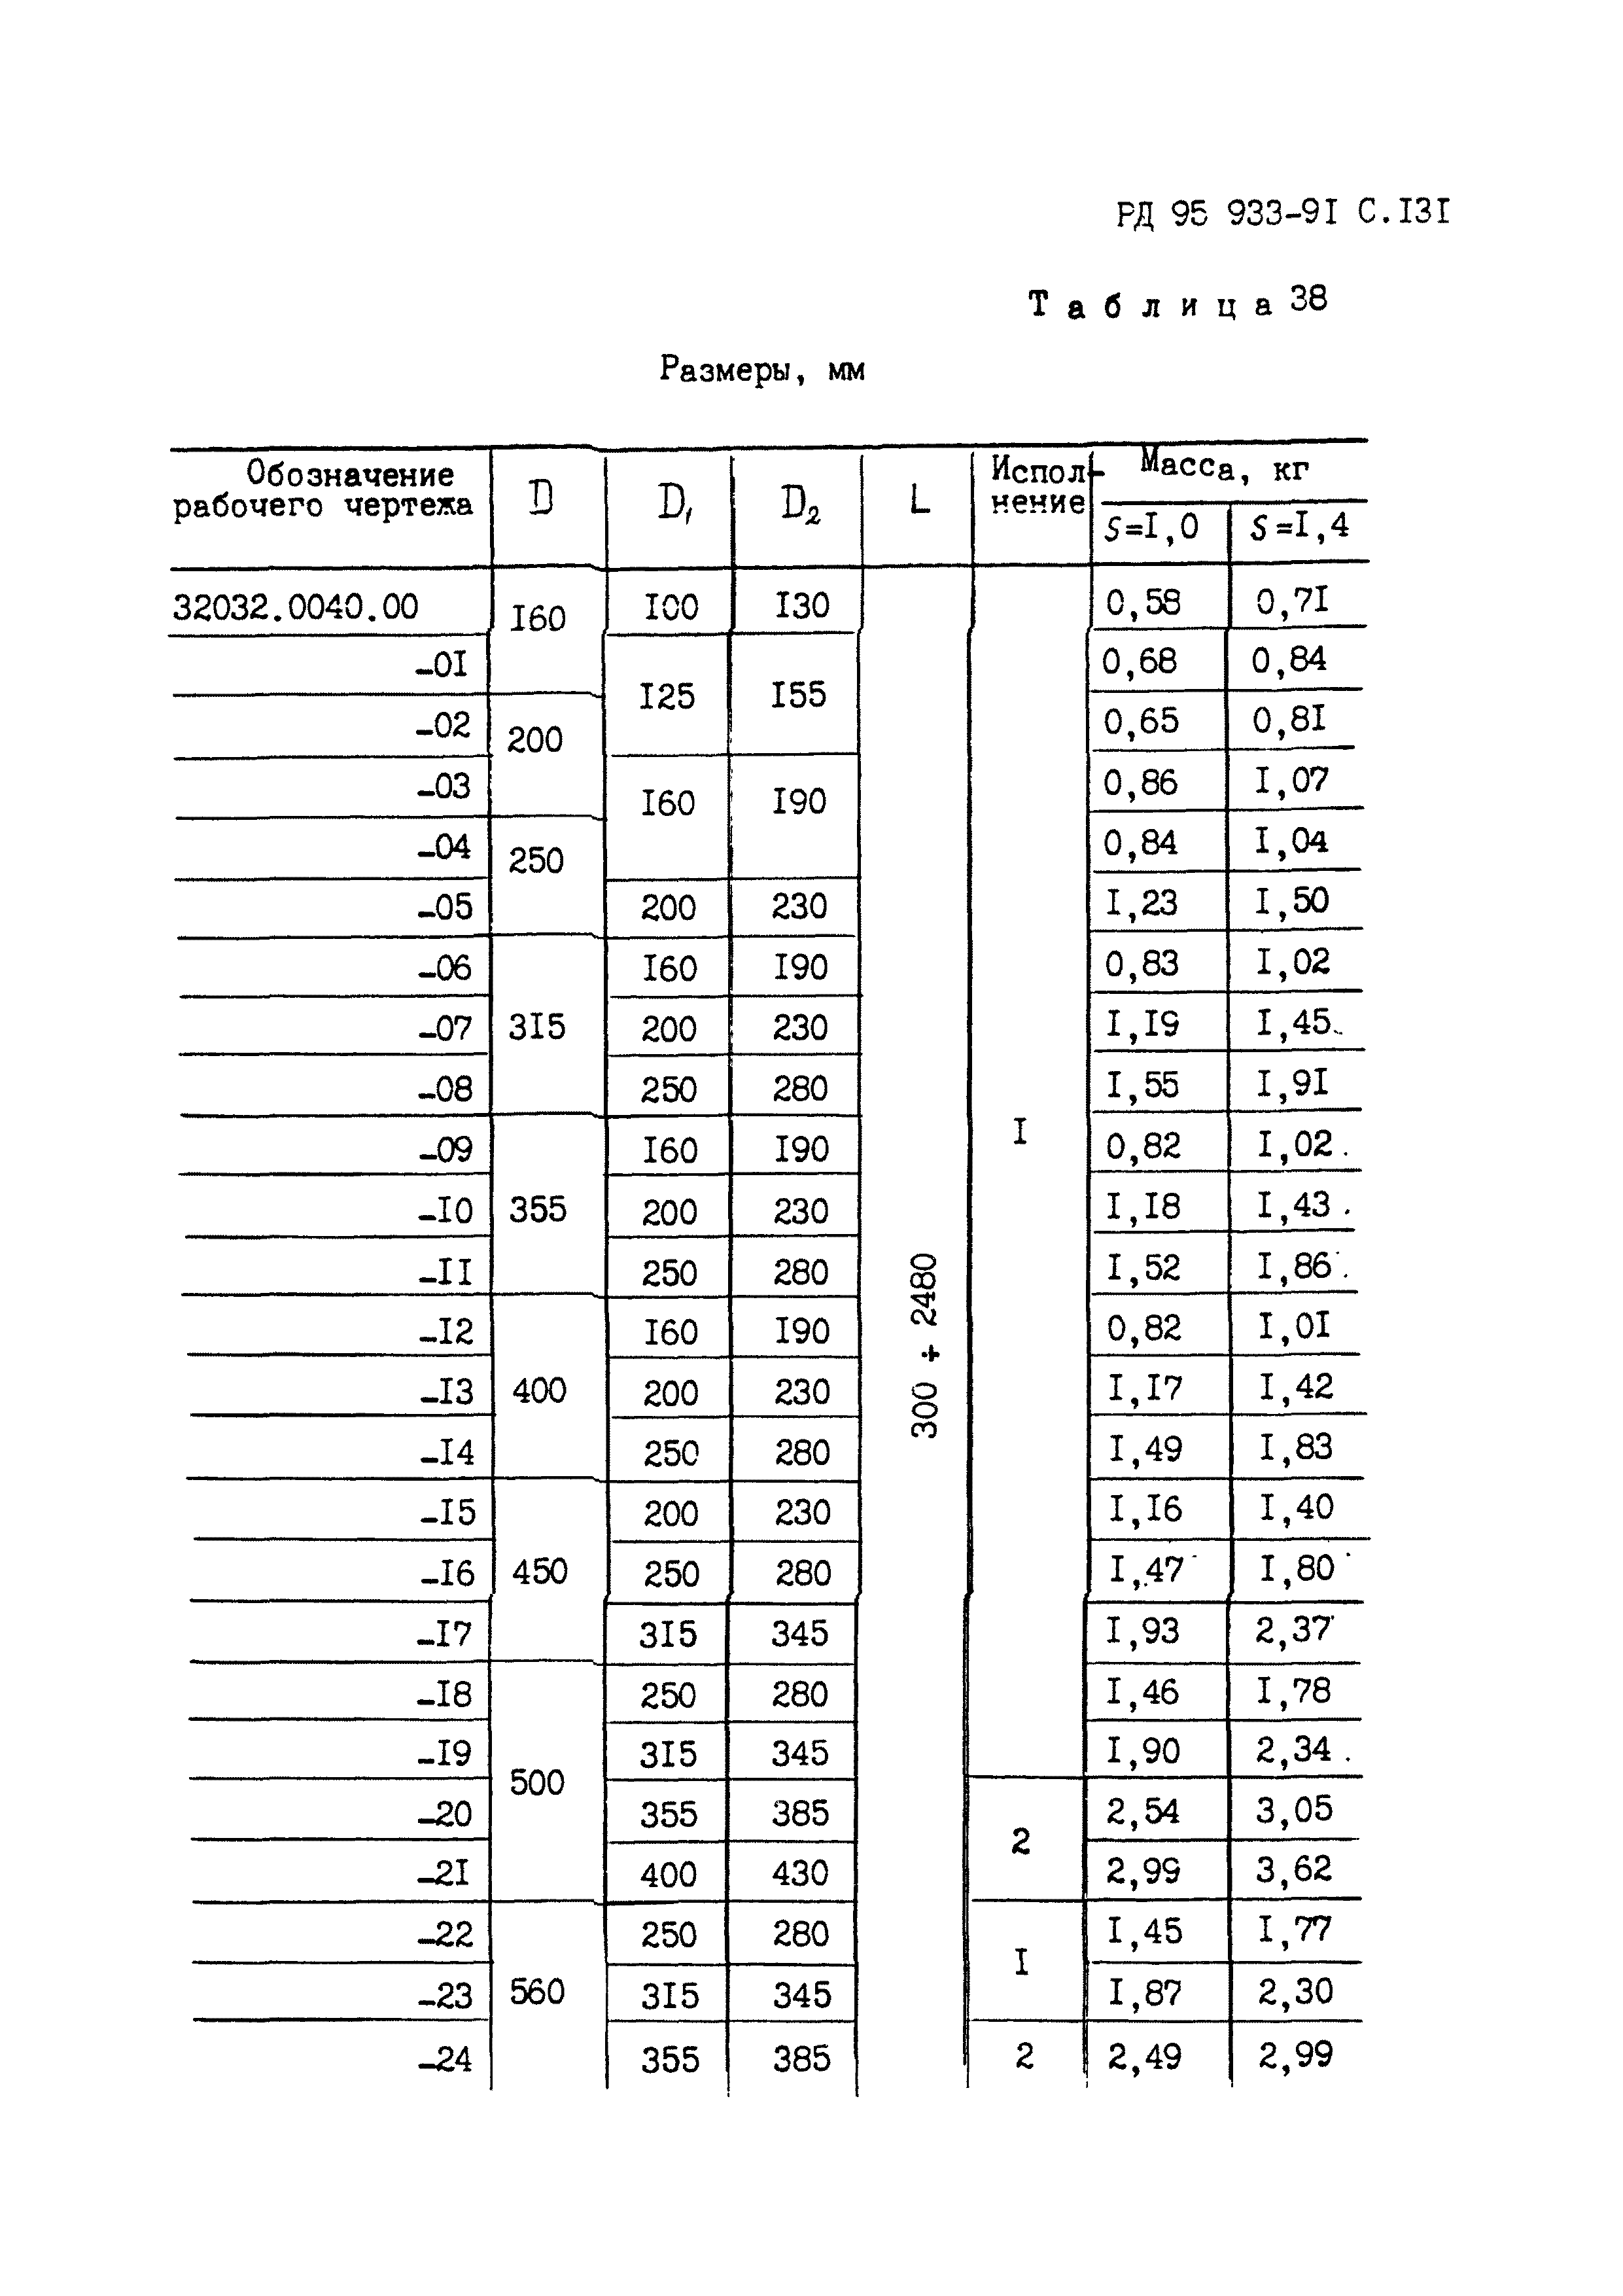 РД 95 933-91